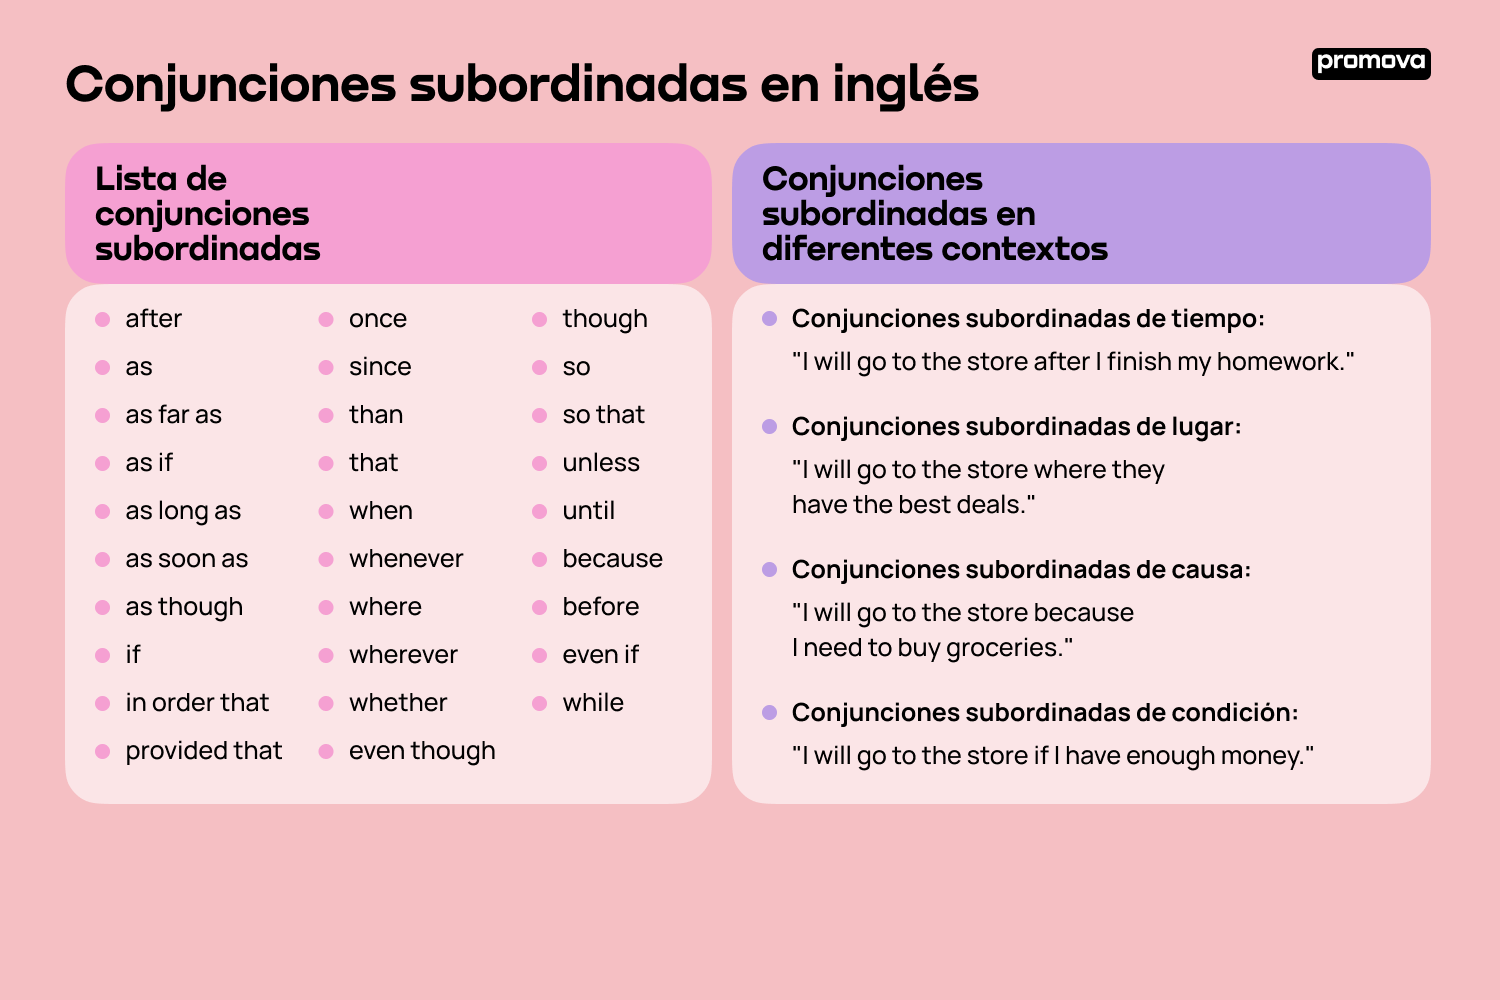 Guía completa sobre conjunciones subordinadas en inglés: Uso y ejemplos